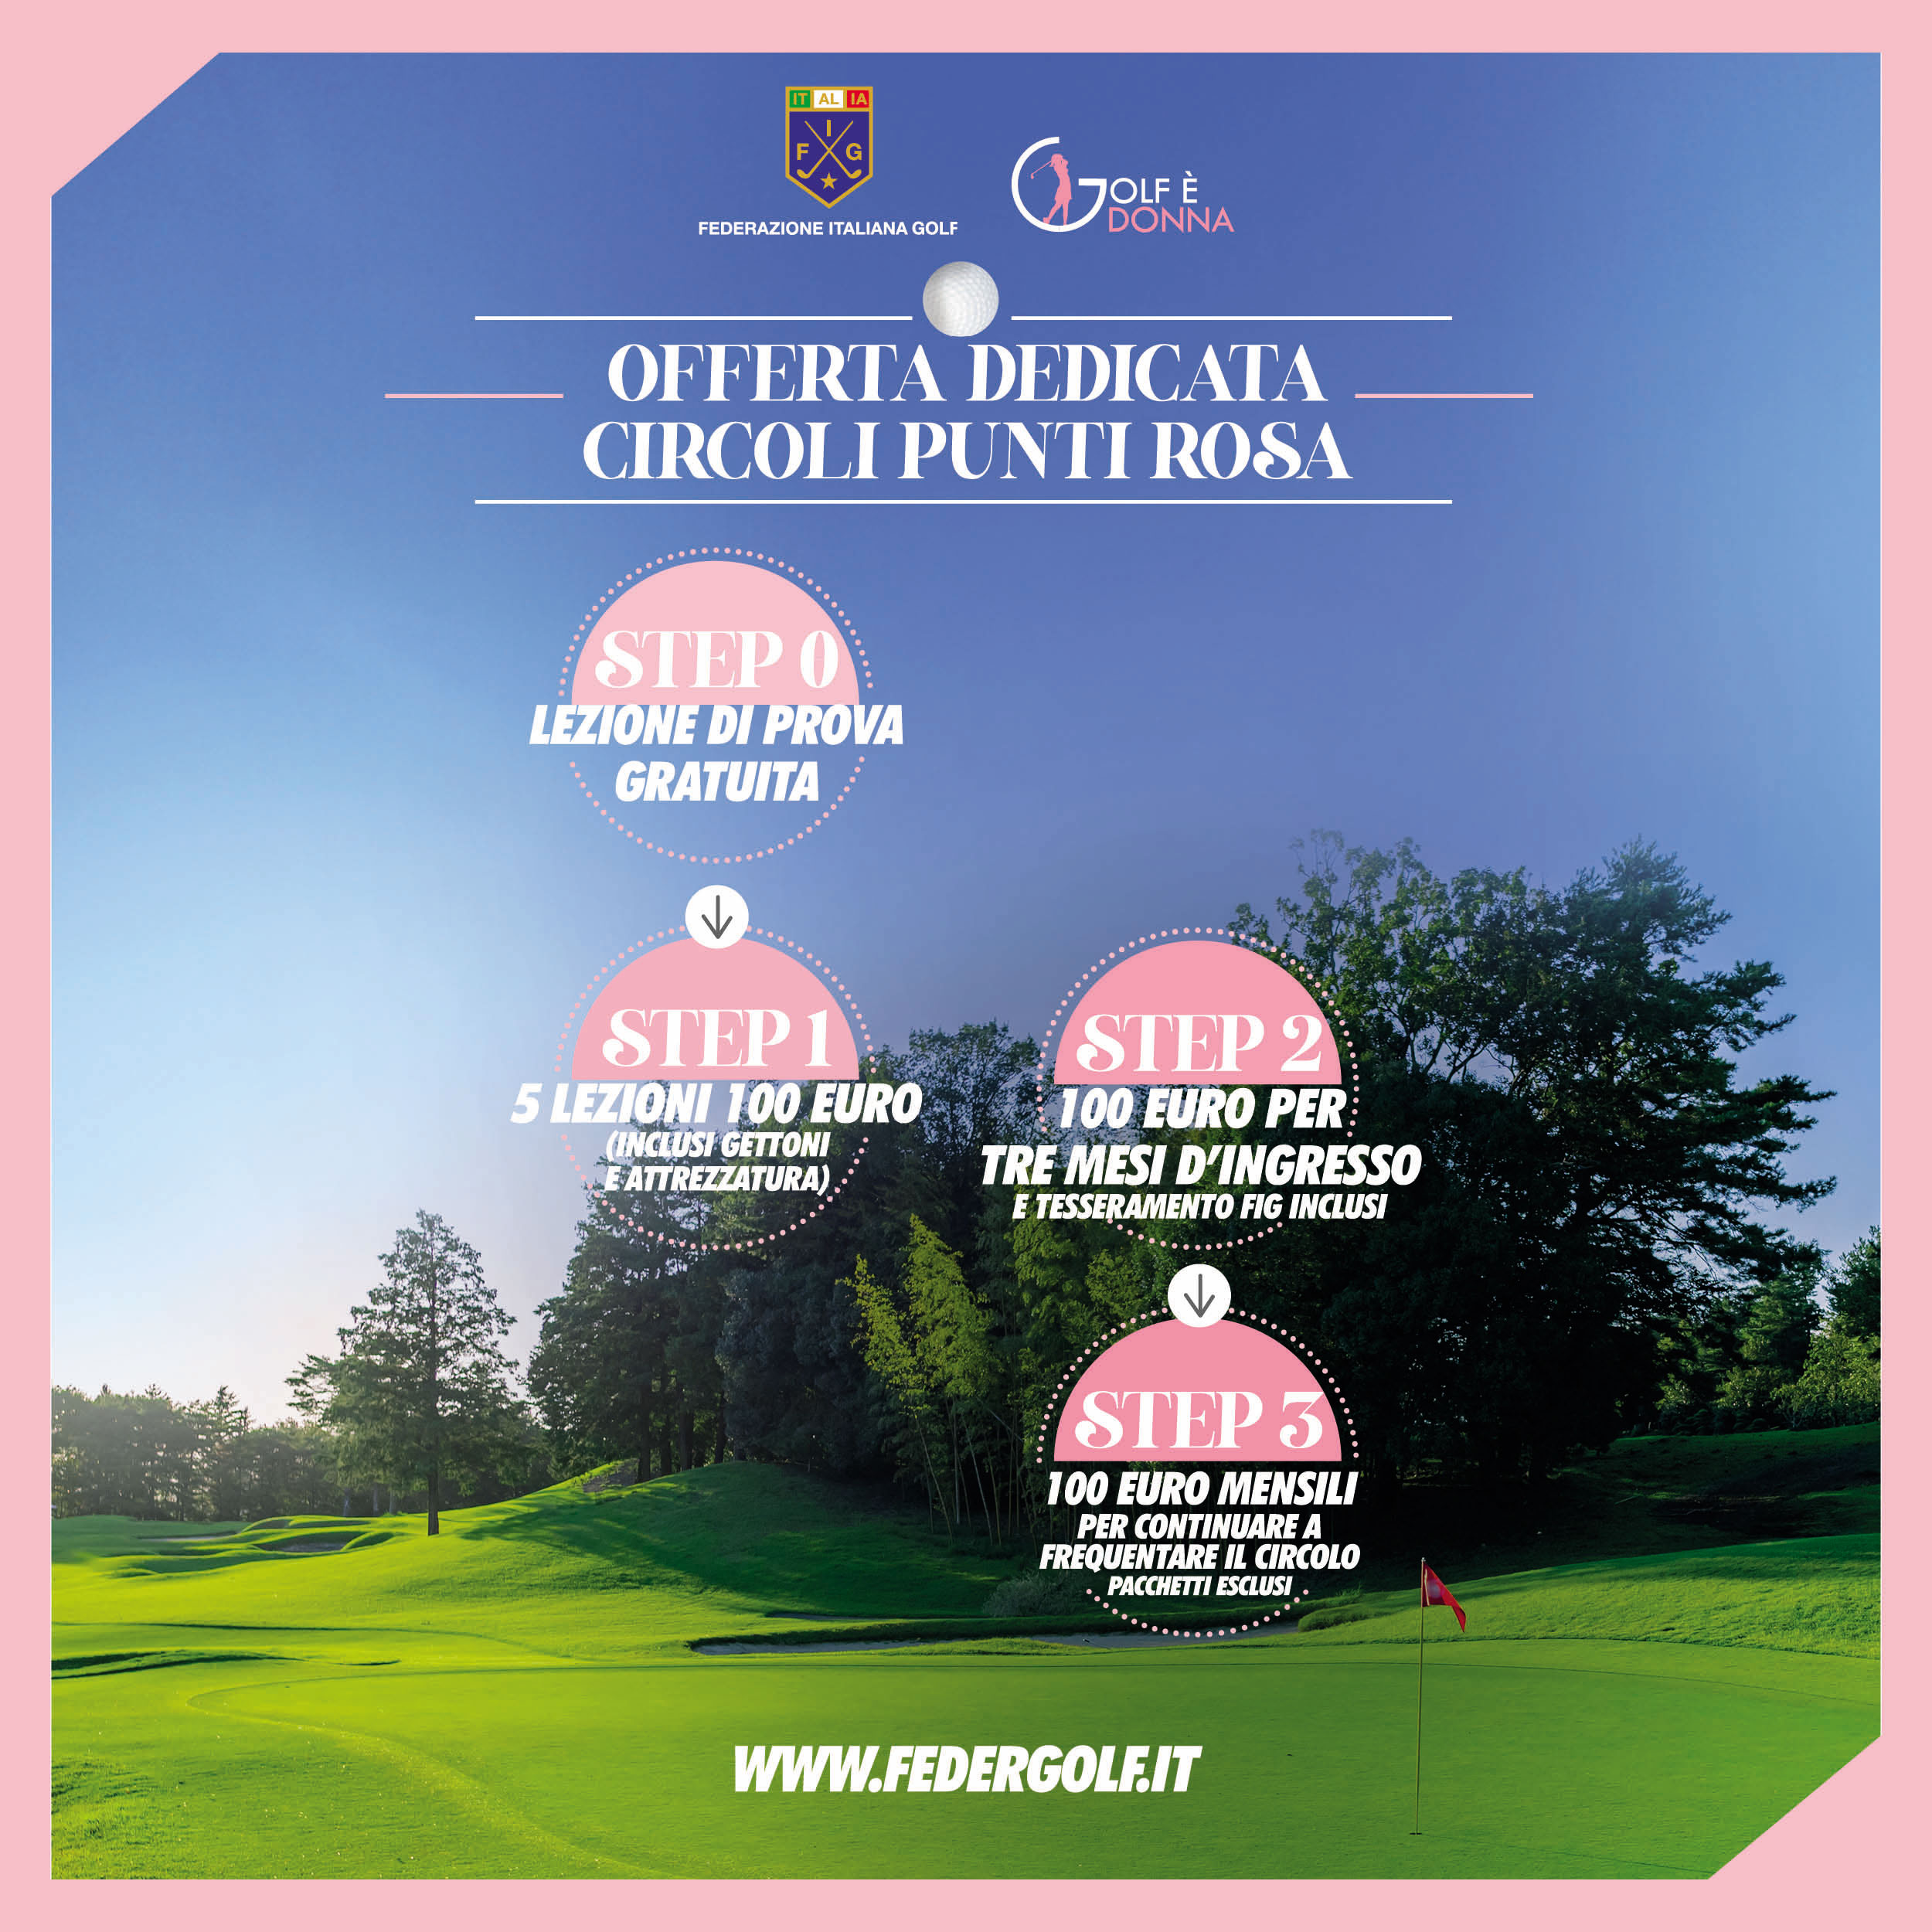 Golf è donna - Golf club San Michele